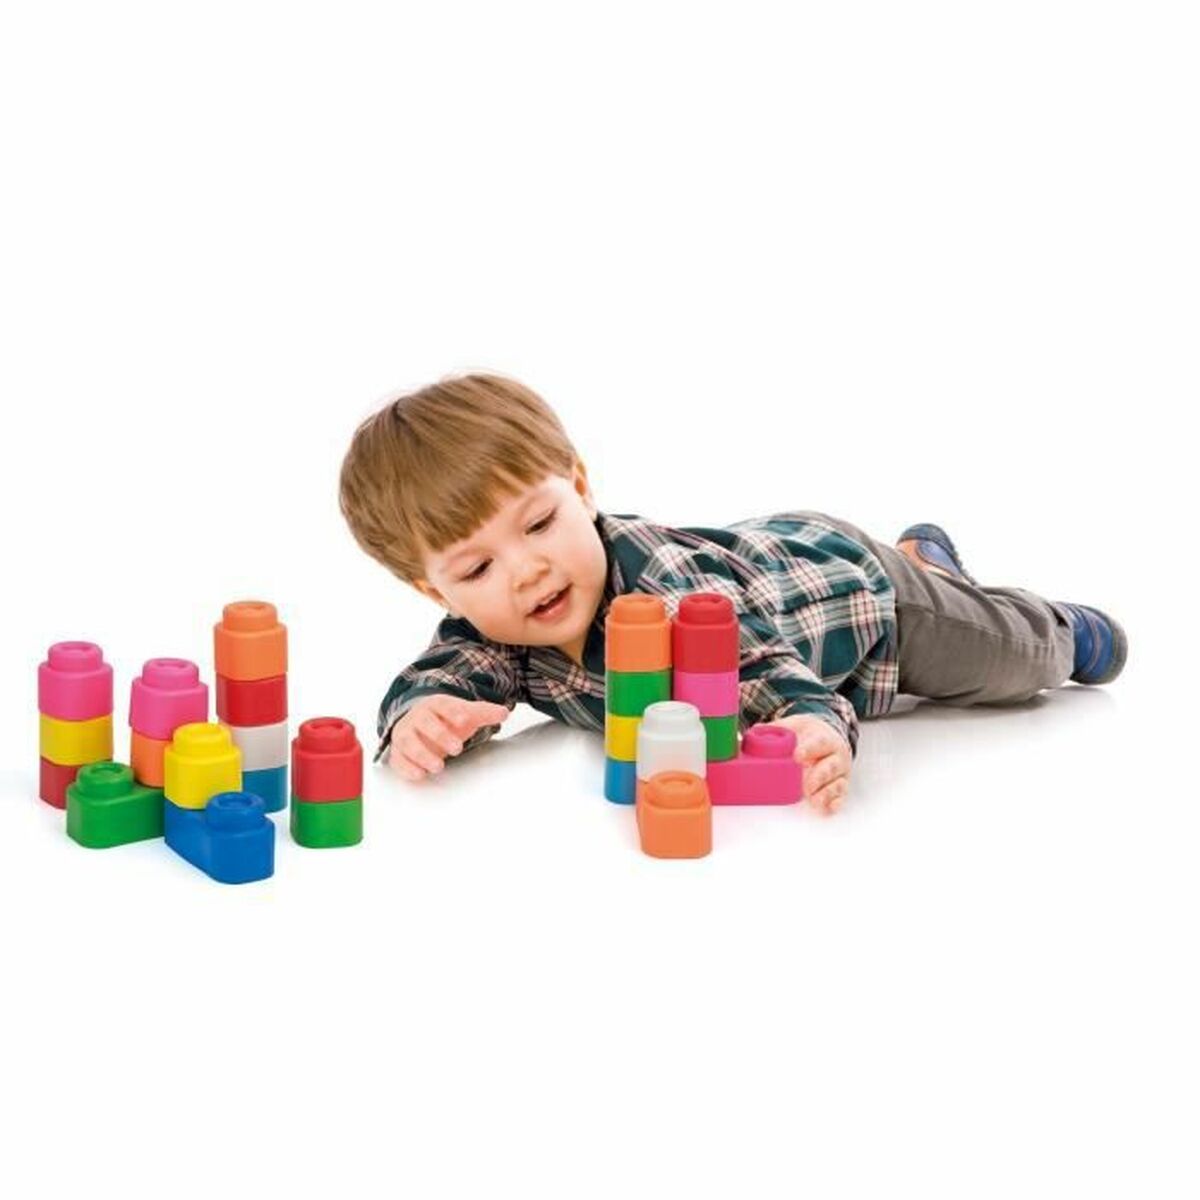 Jeu de construction avec blocs Baby Clemmy Clementoni (24 pcs) (13 x 20,5 x 26,5 cm)